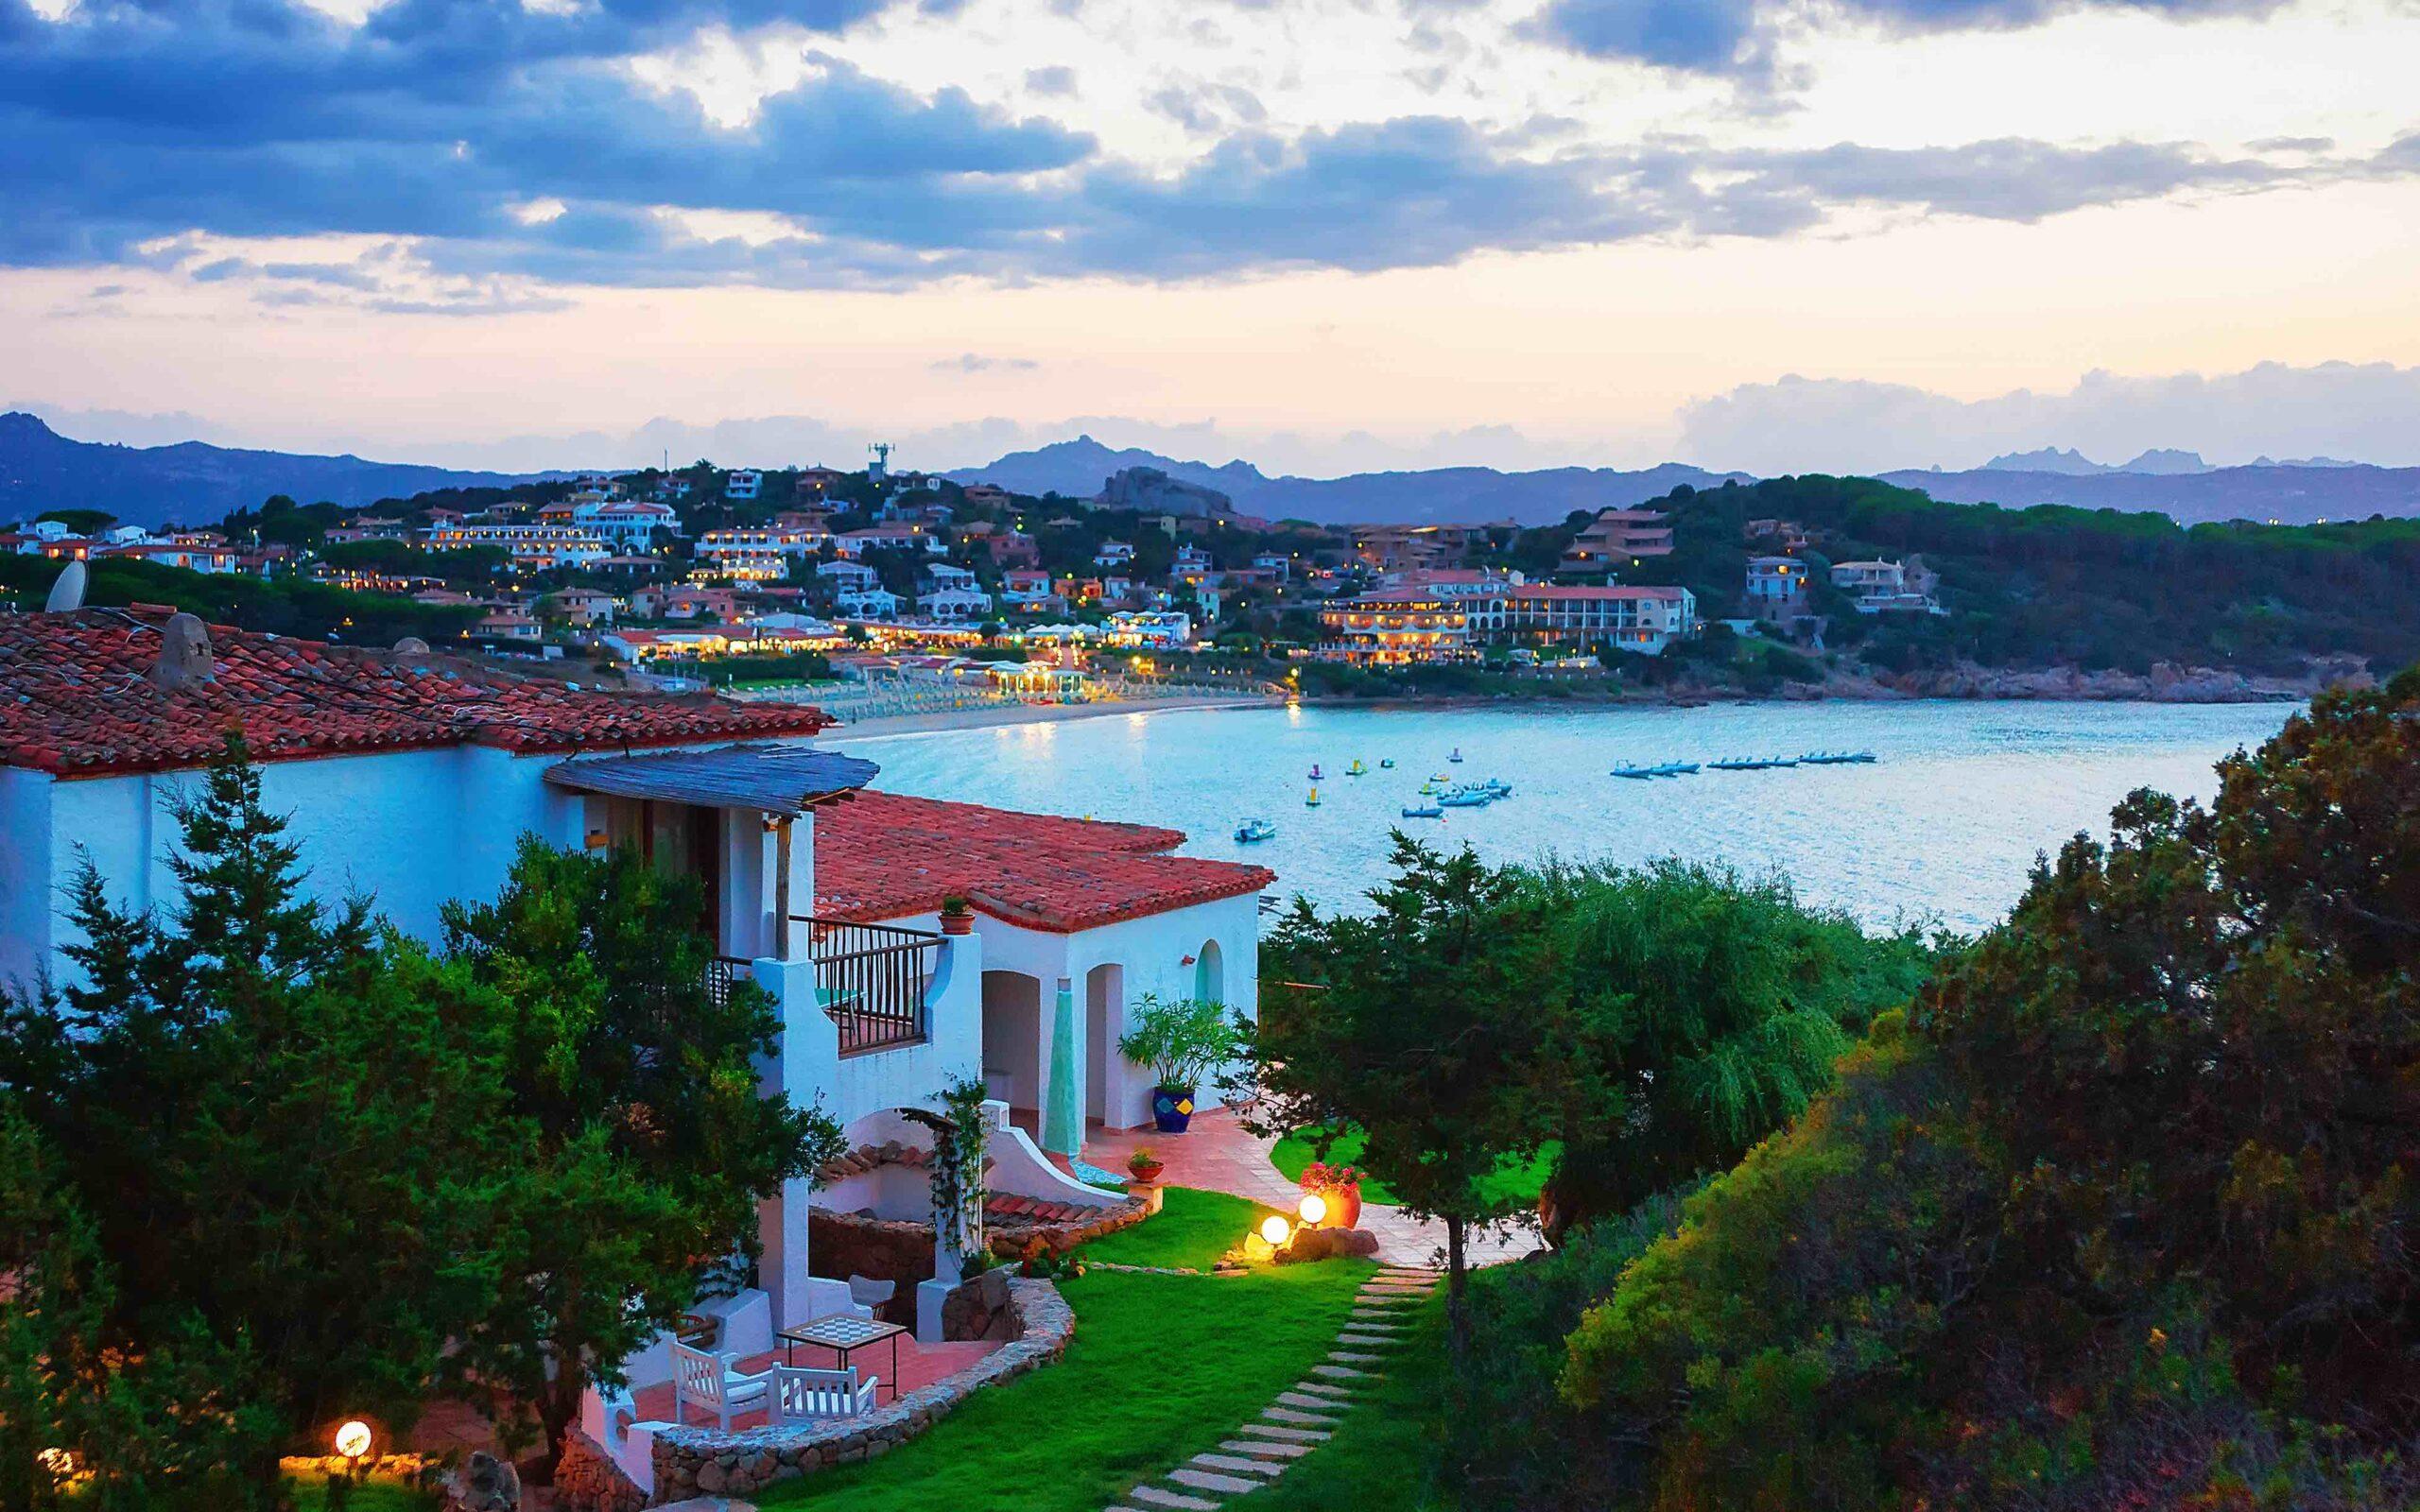 Nyt vakre utsikter, deilige strender og flotte hoteller på Sardinia i Italia.